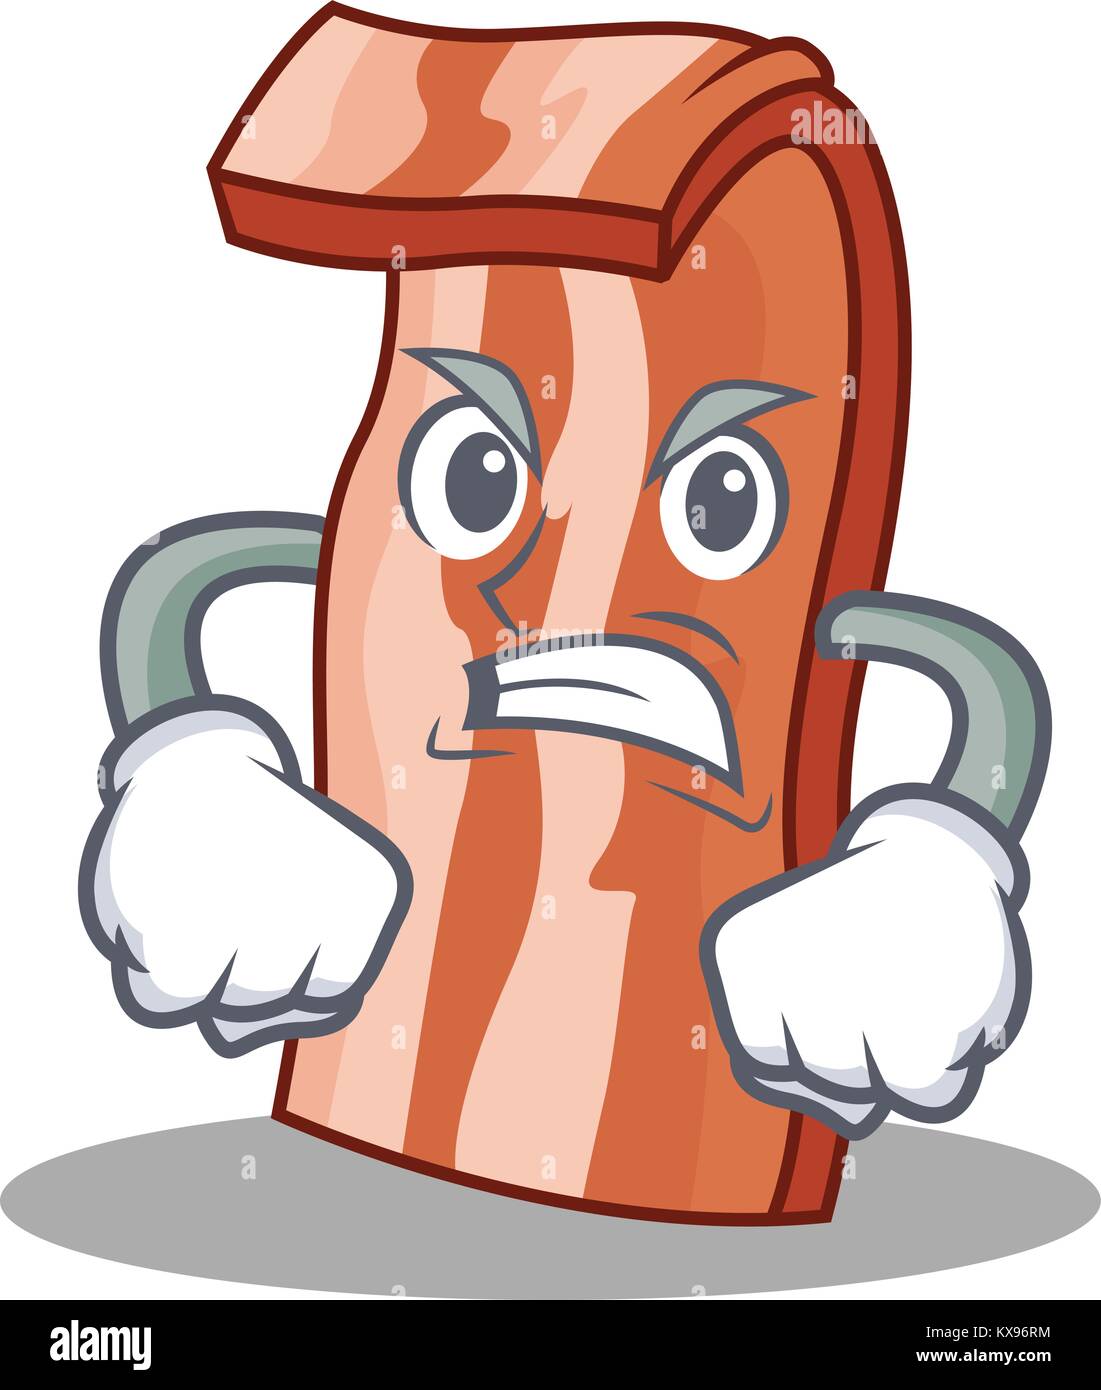 Angry bacon mascot cartoon style Stock Vector